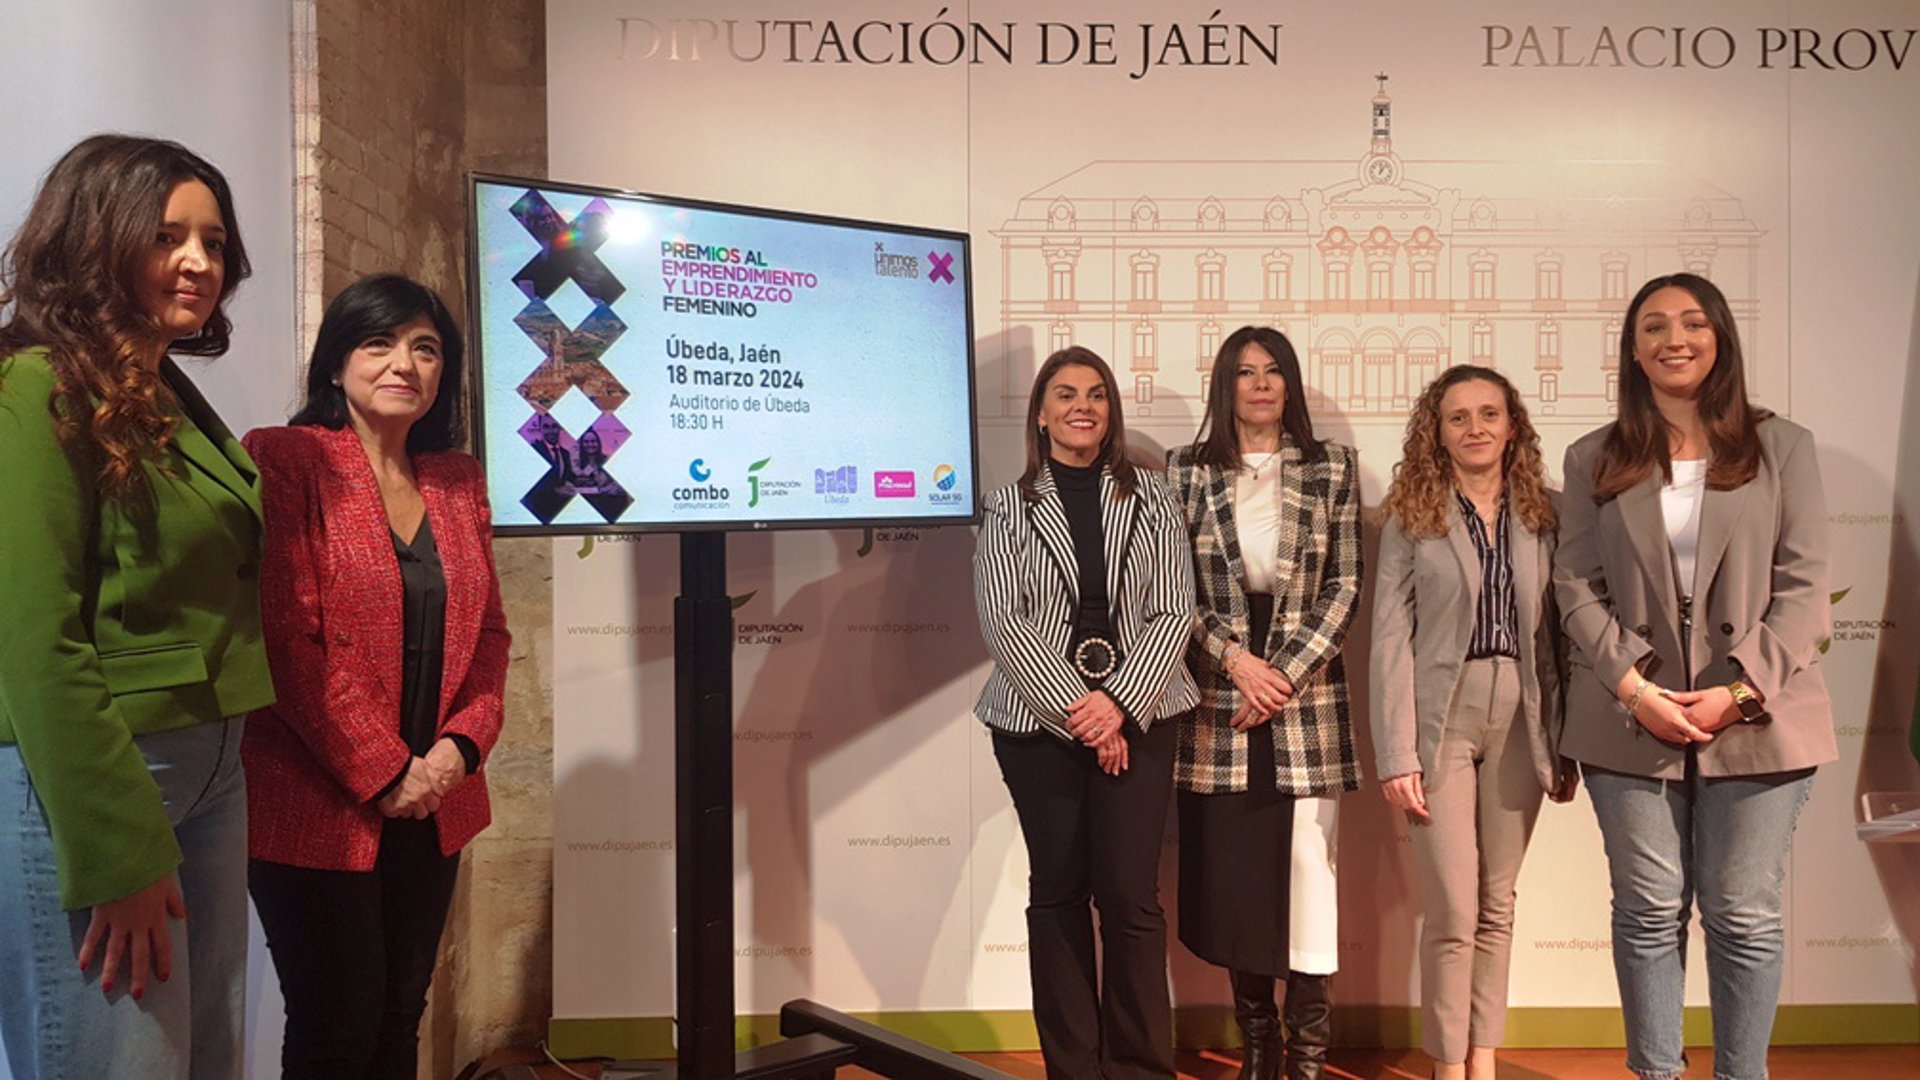 21/02/2024 Presentación de los I Premios al Emprendimiento y Liderazgo Femenino en Jaén.
POLITICA 
DIPUTACIÓN DE JAÉN